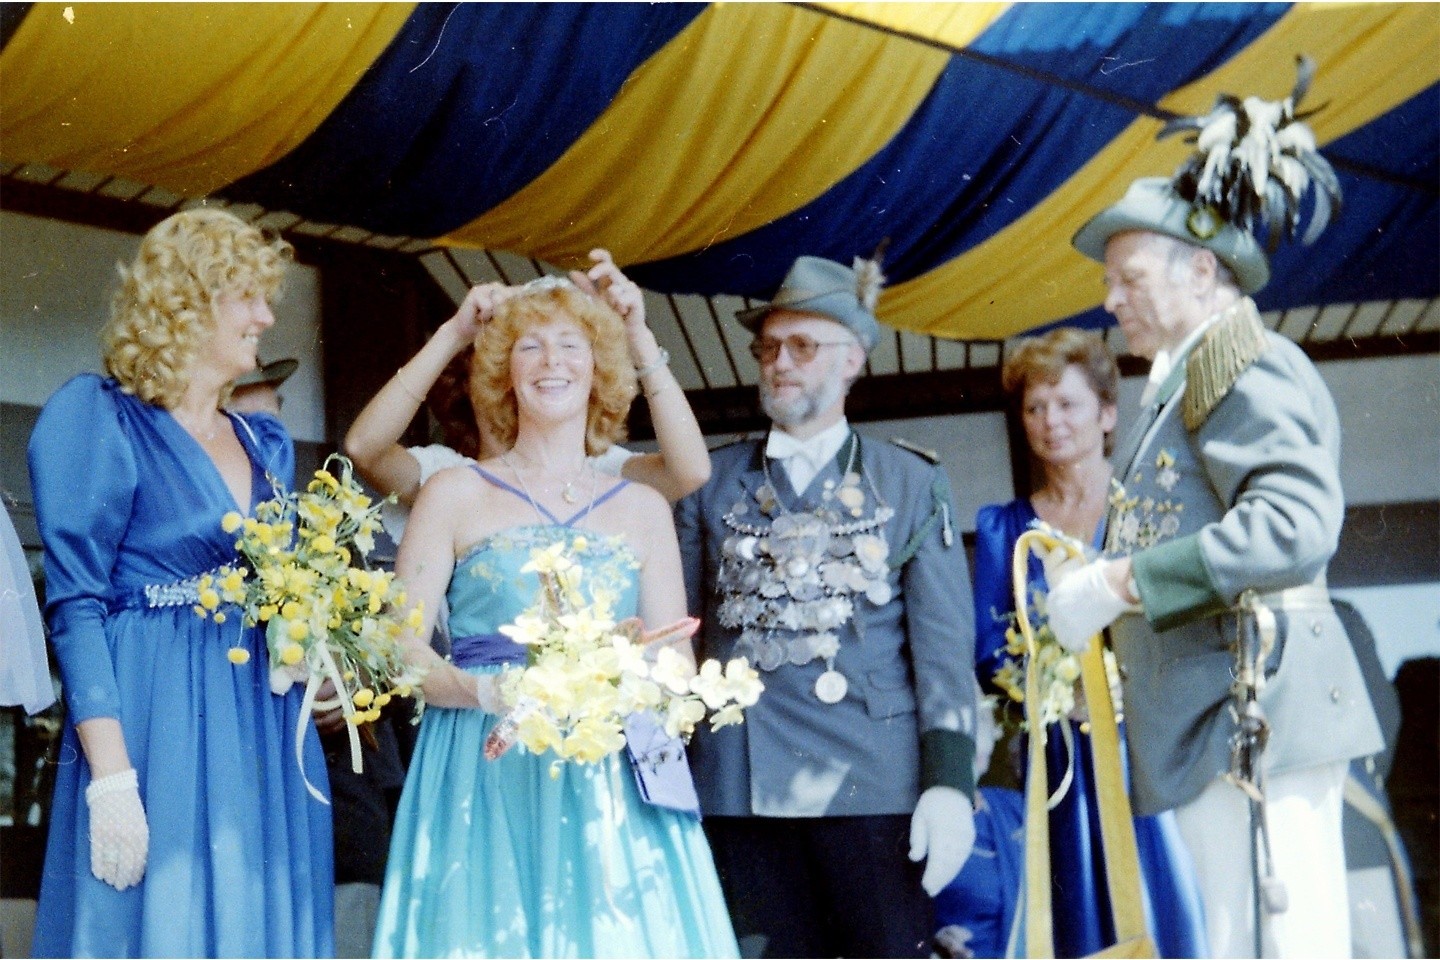 Krönung zum Jubelschützenfest 1m 10. Juli 1983 König Bernhard Humborg sen. und seine Königin Lucie Brinkmöller und Hofstaat vor dem Rathaus